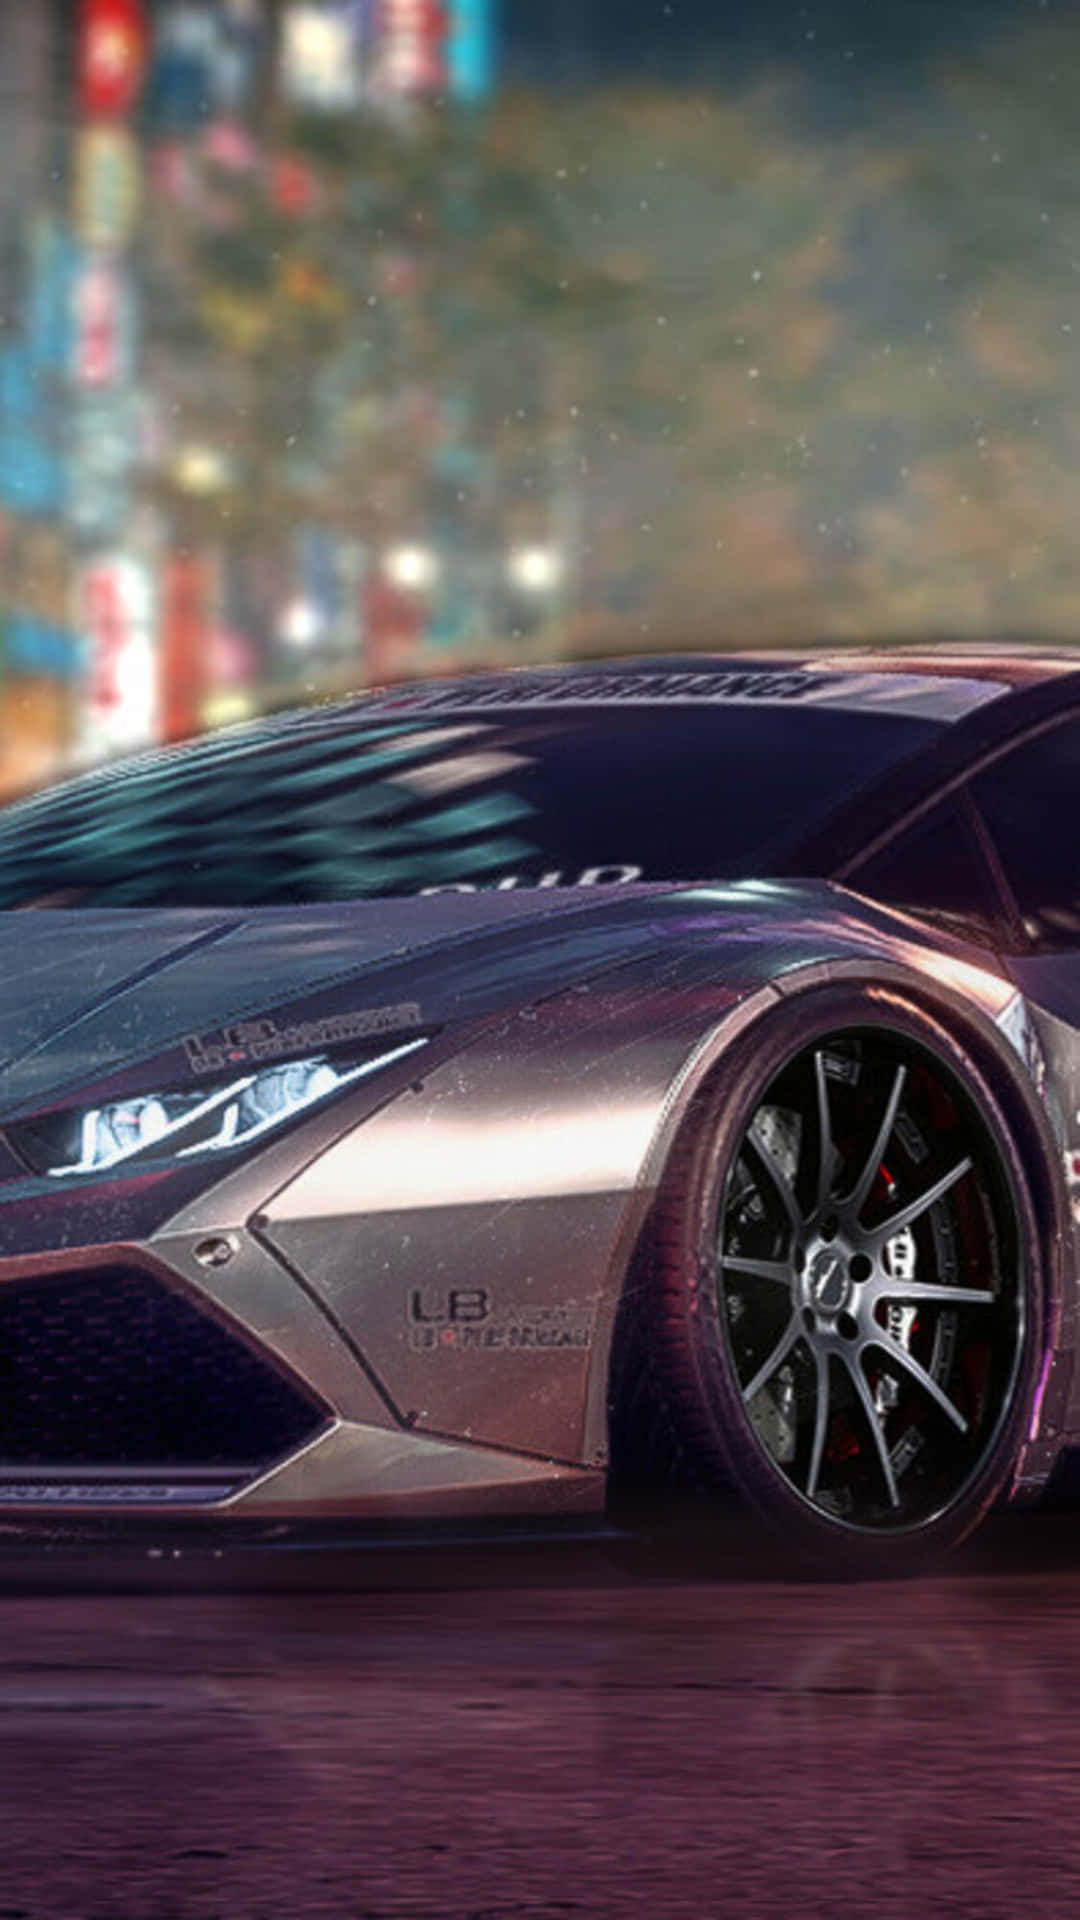 Iphonexs Bakgrundsbild Med Need For Speed Payback Och Grå Lamborghini Huracán.